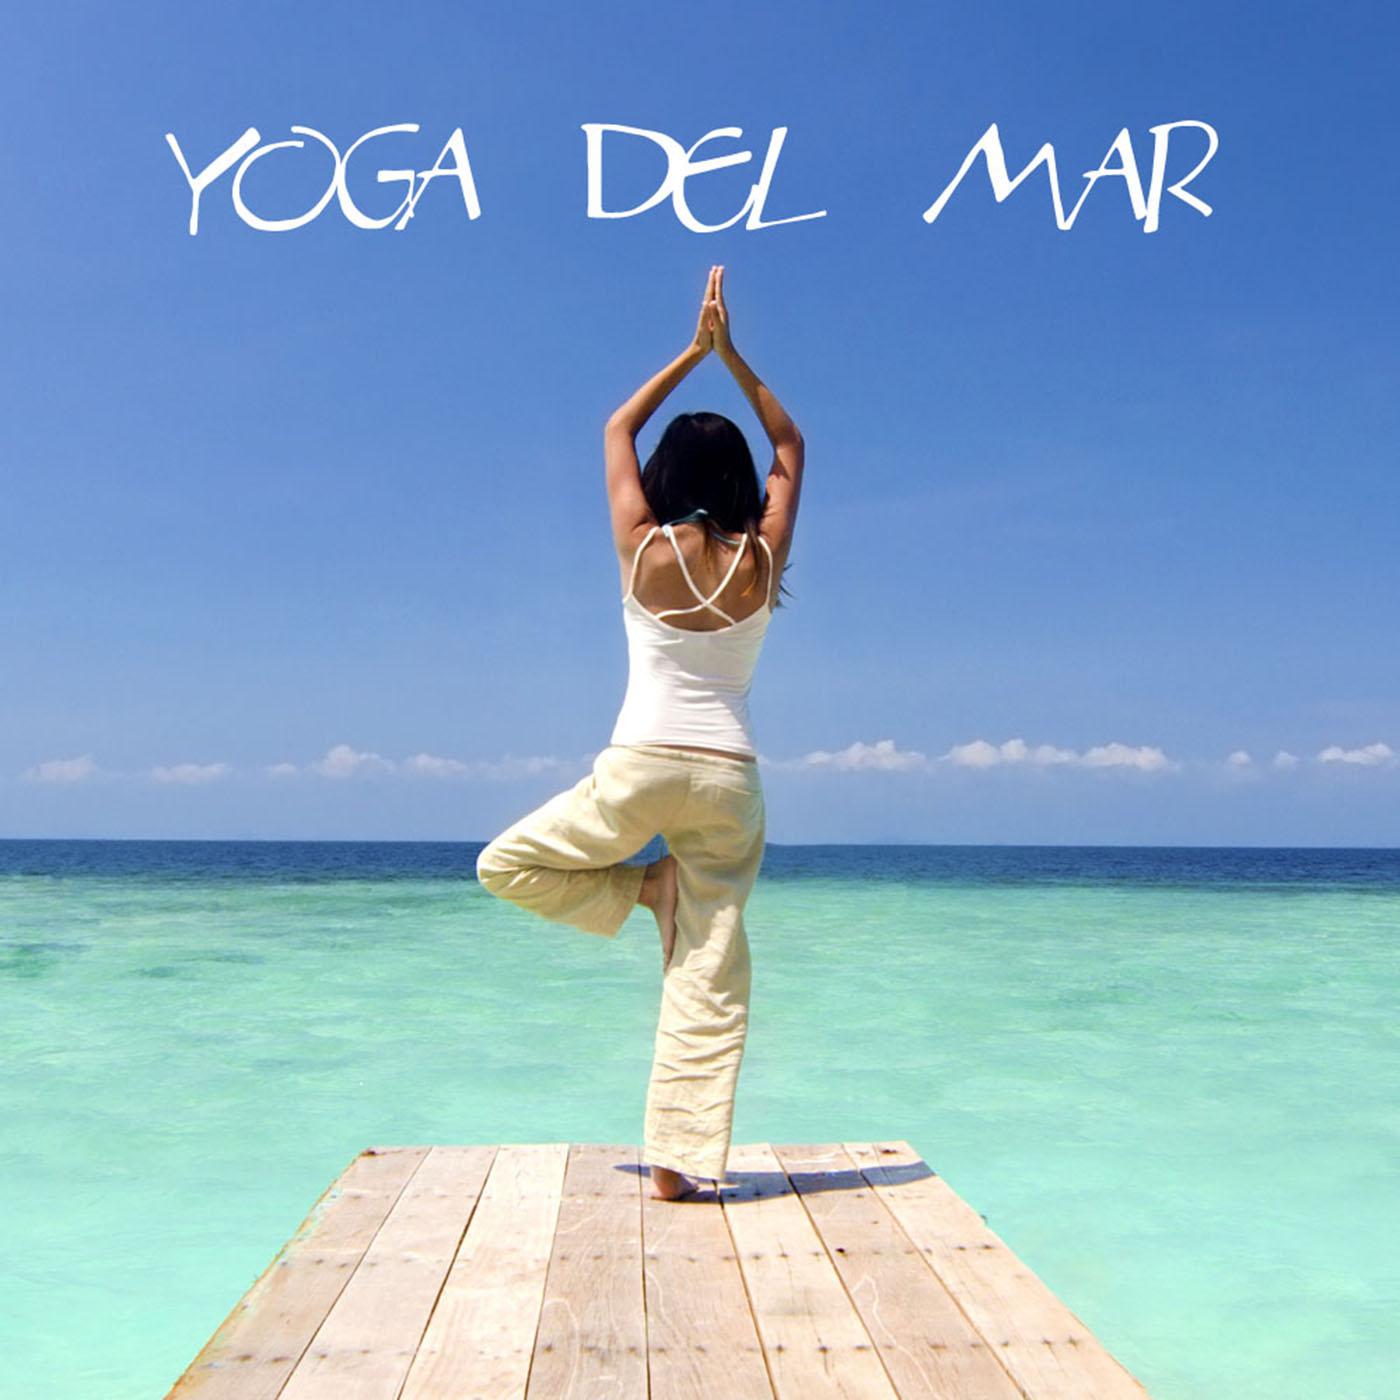 Yoga del Mar: Musica para Yoga, Sonidos de la Naturaleza para Meditacion y Reiki, Musica Relajante para Clases de Yoga, Musicoterapia, Hilo Musical y Ambient Music, Musica para Dormir